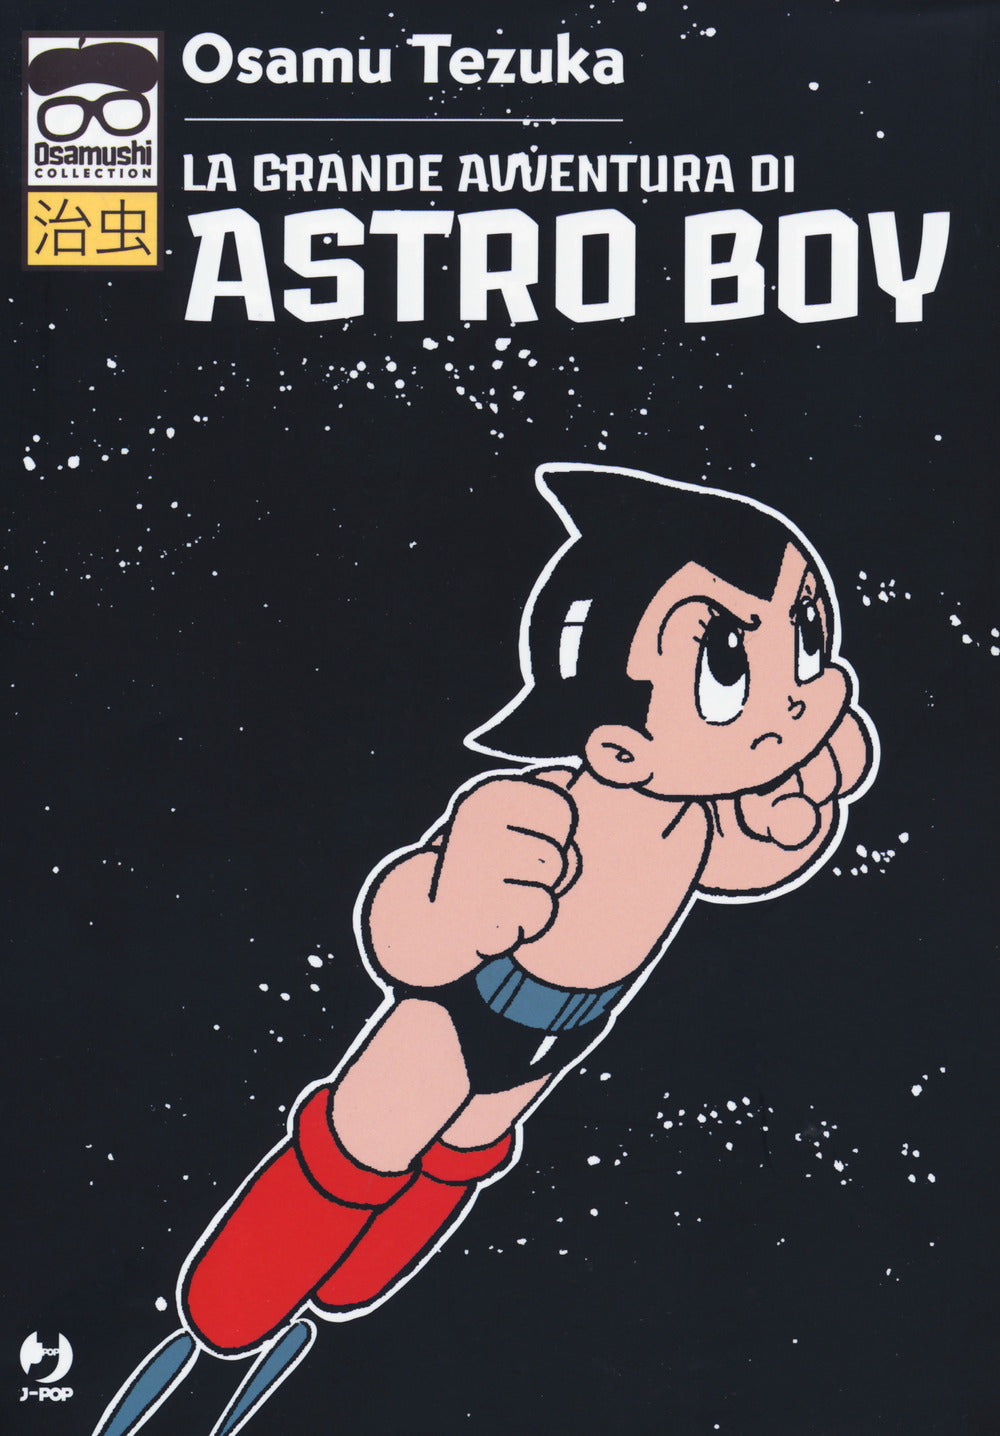 La grande avventura di Astroboy.